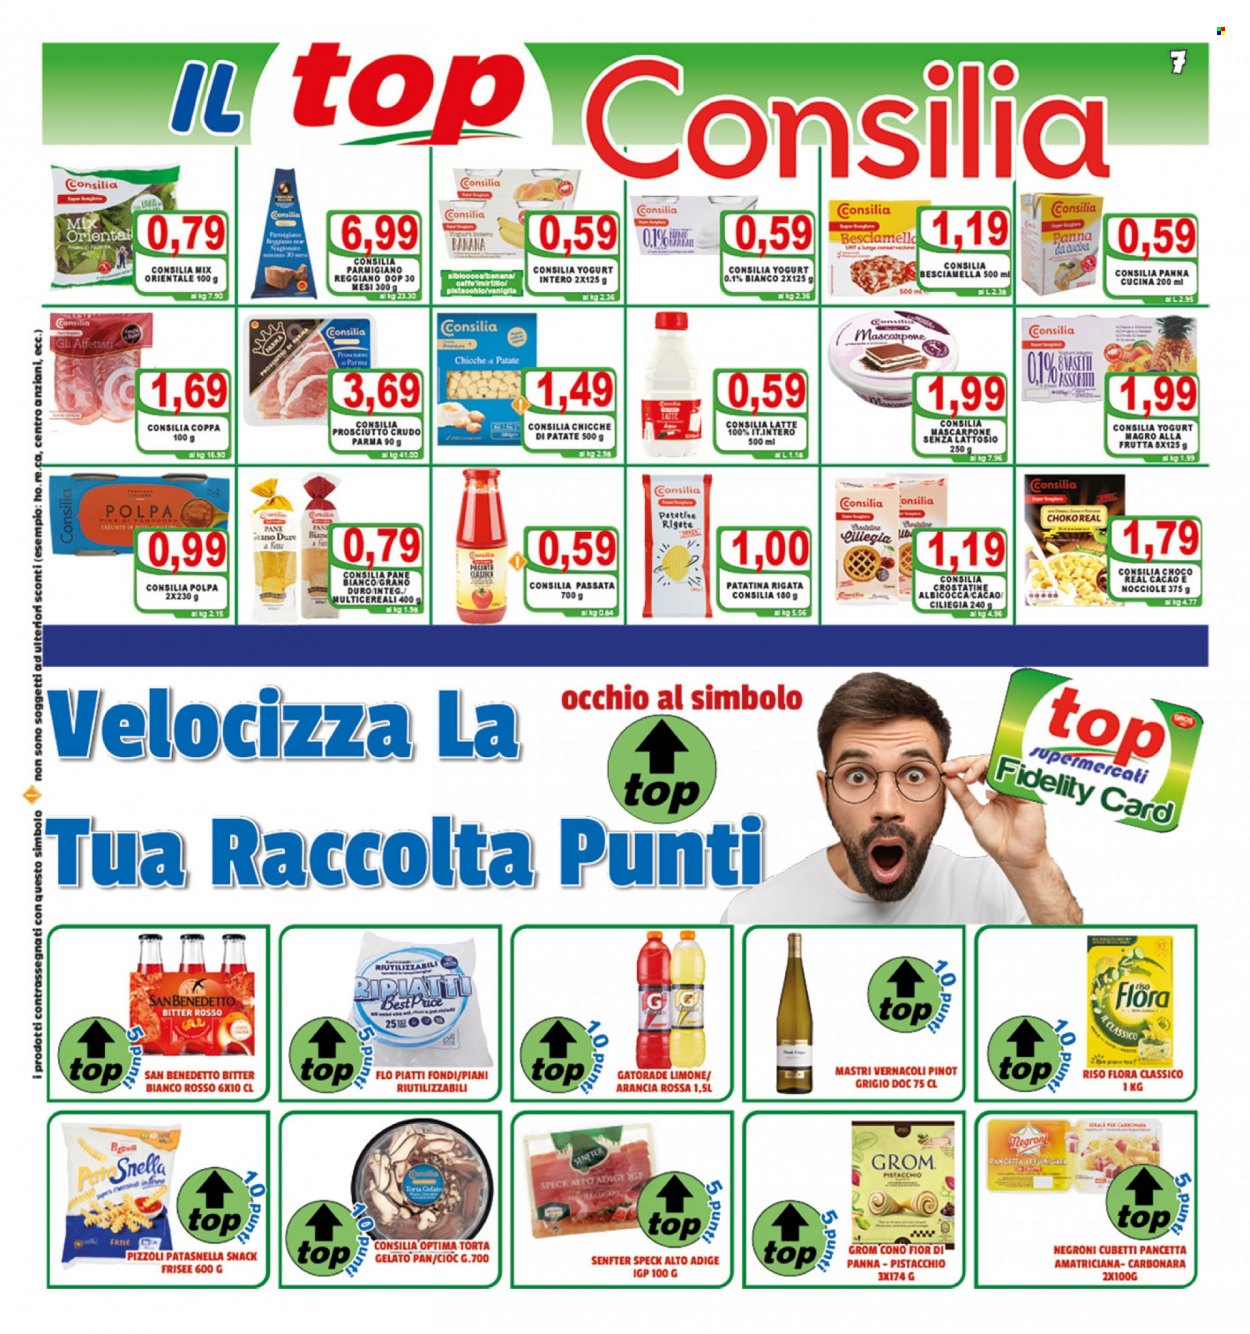 Volantino Top Supermercati - 10.8.2022 - 18.8.2022.